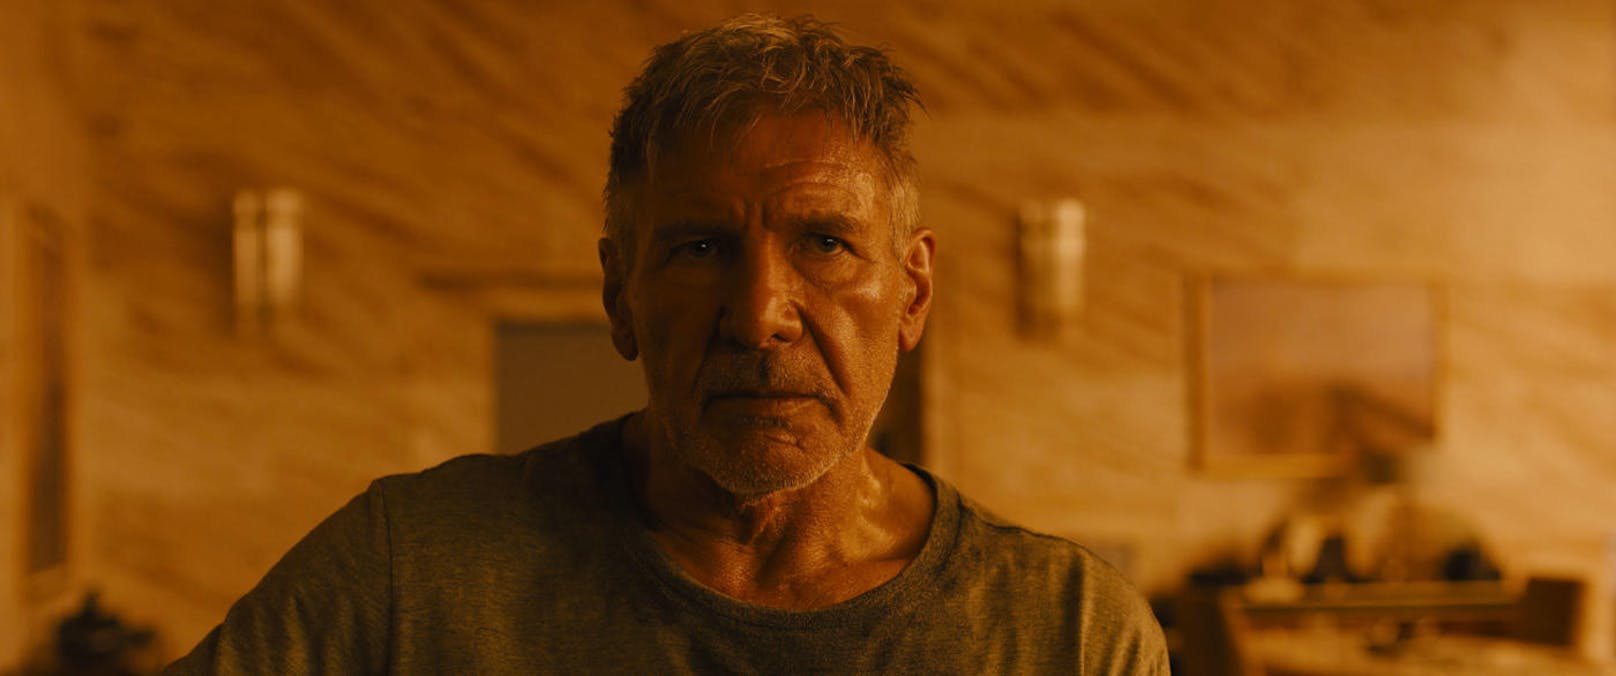 Harrison Ford in "Blade Runner 2049"